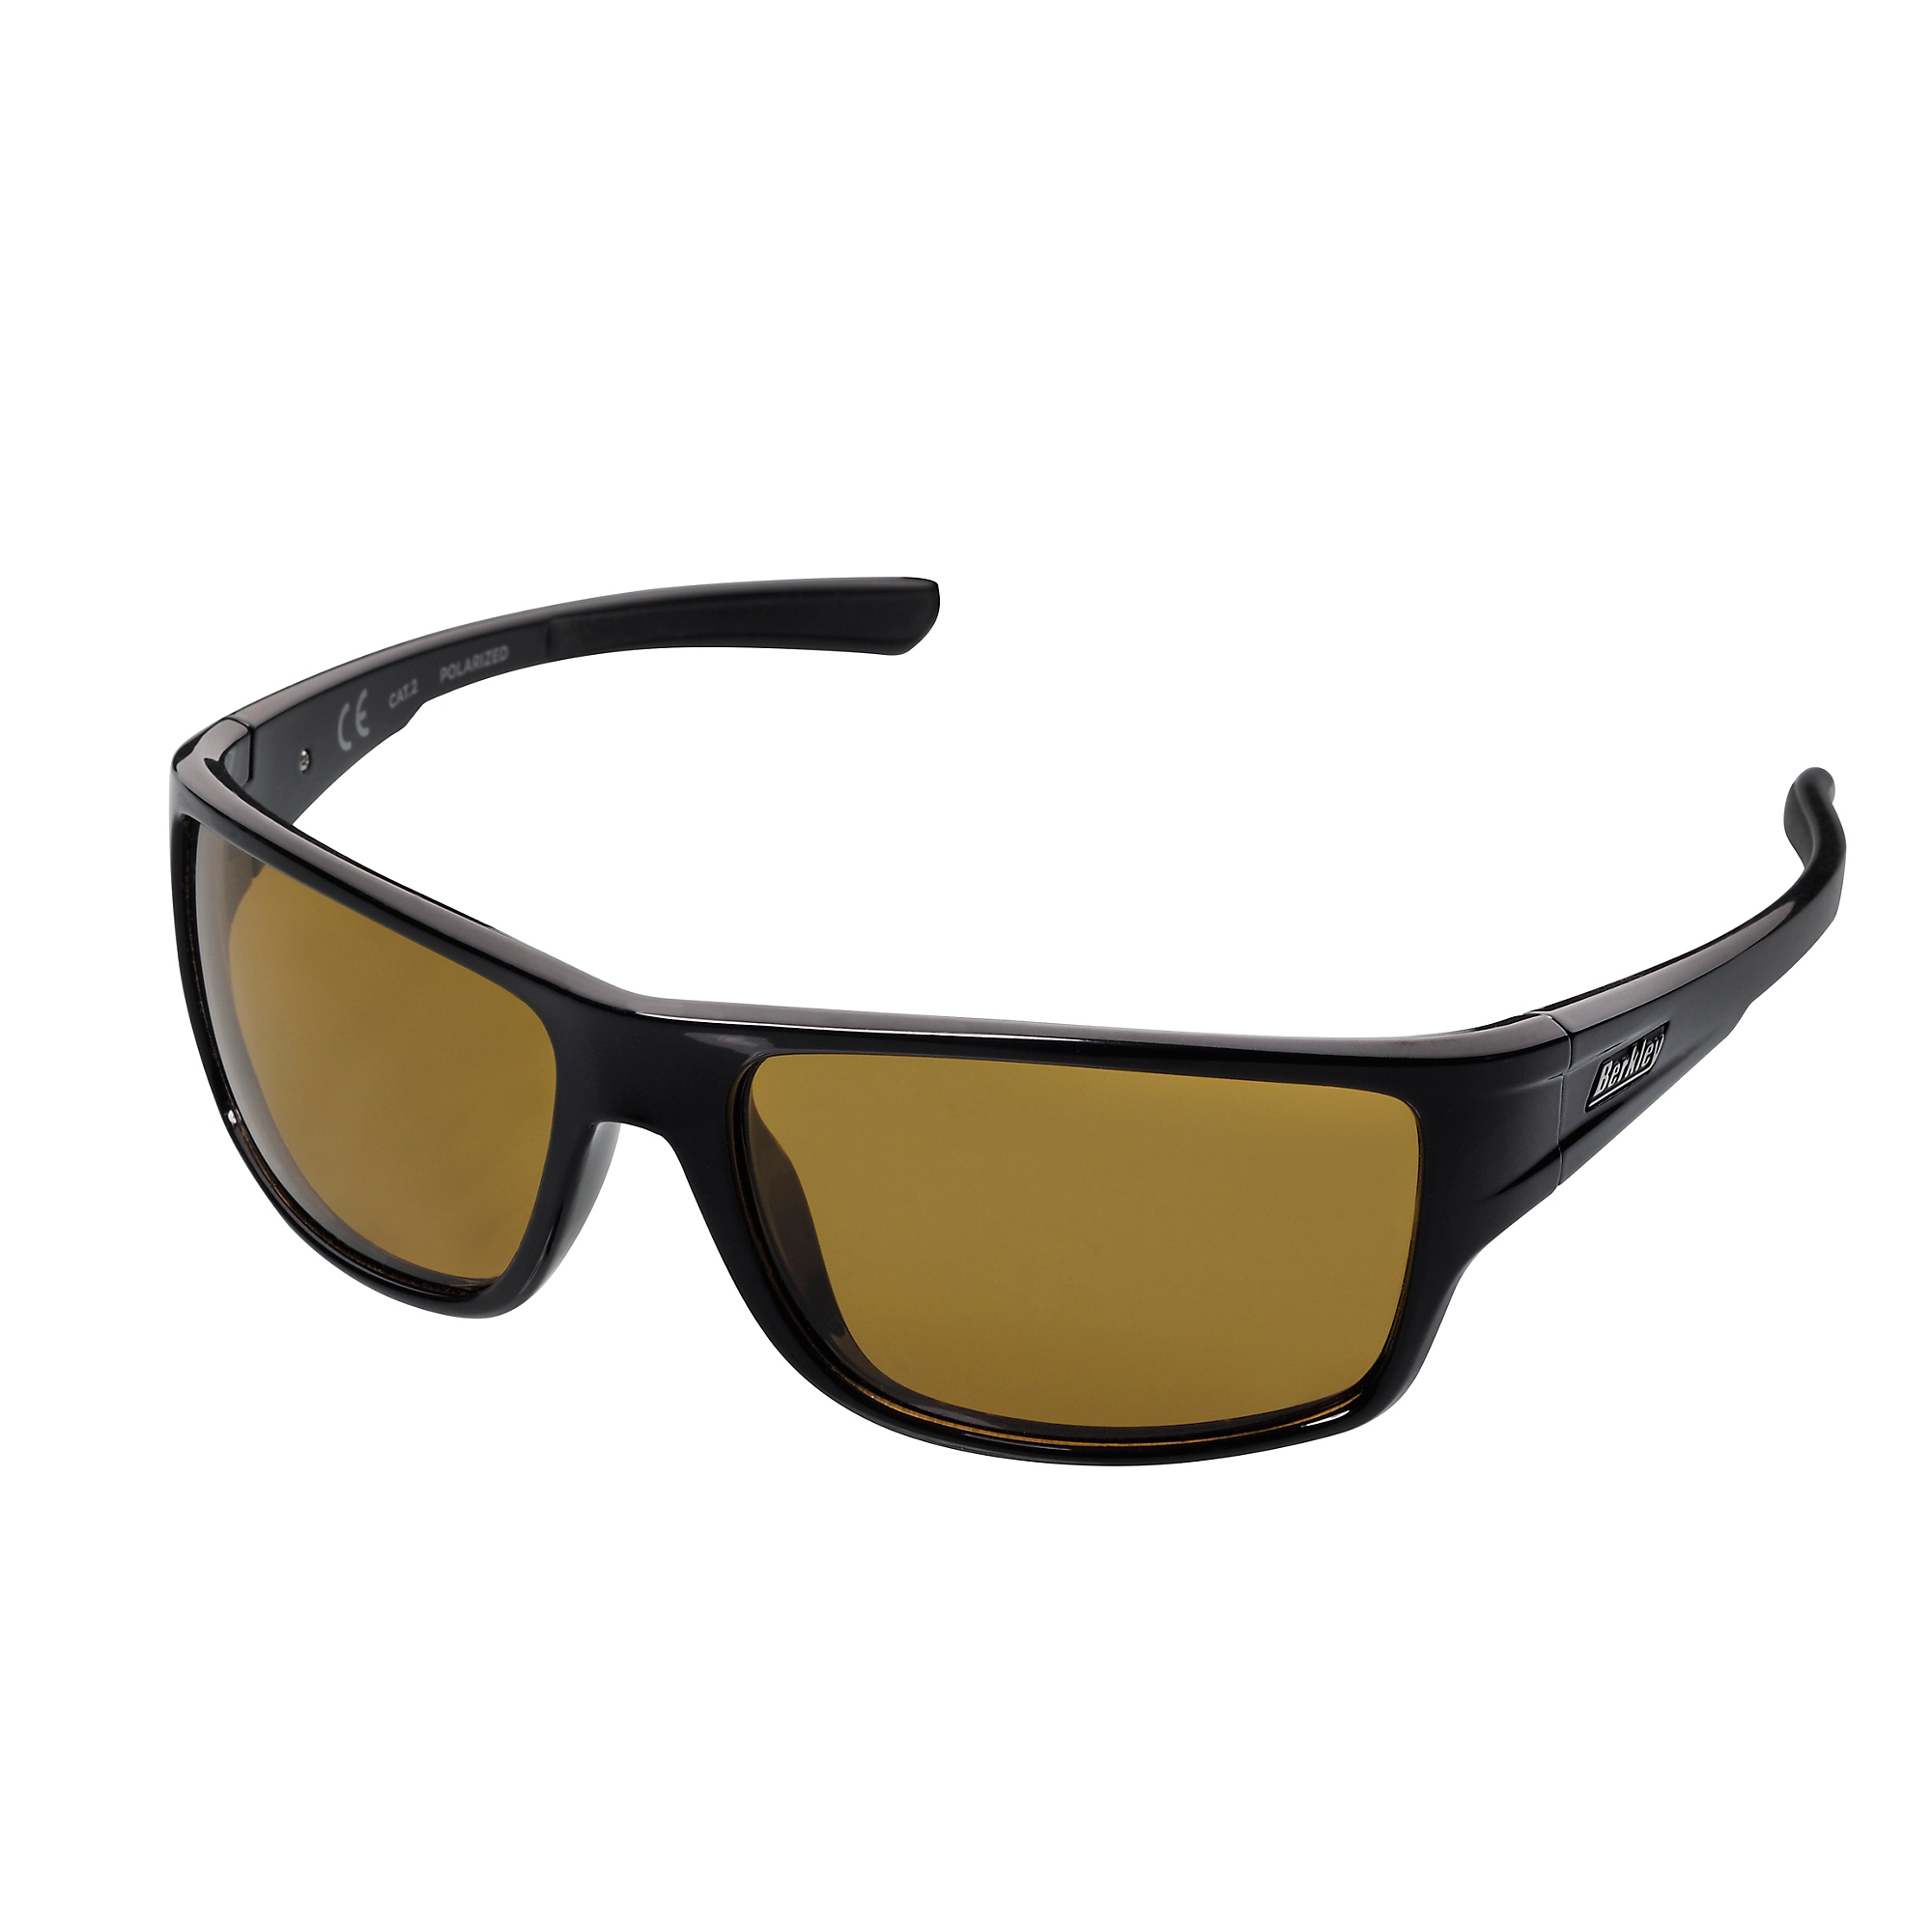 Berkley B11 Sunglasses - Black / Yellow